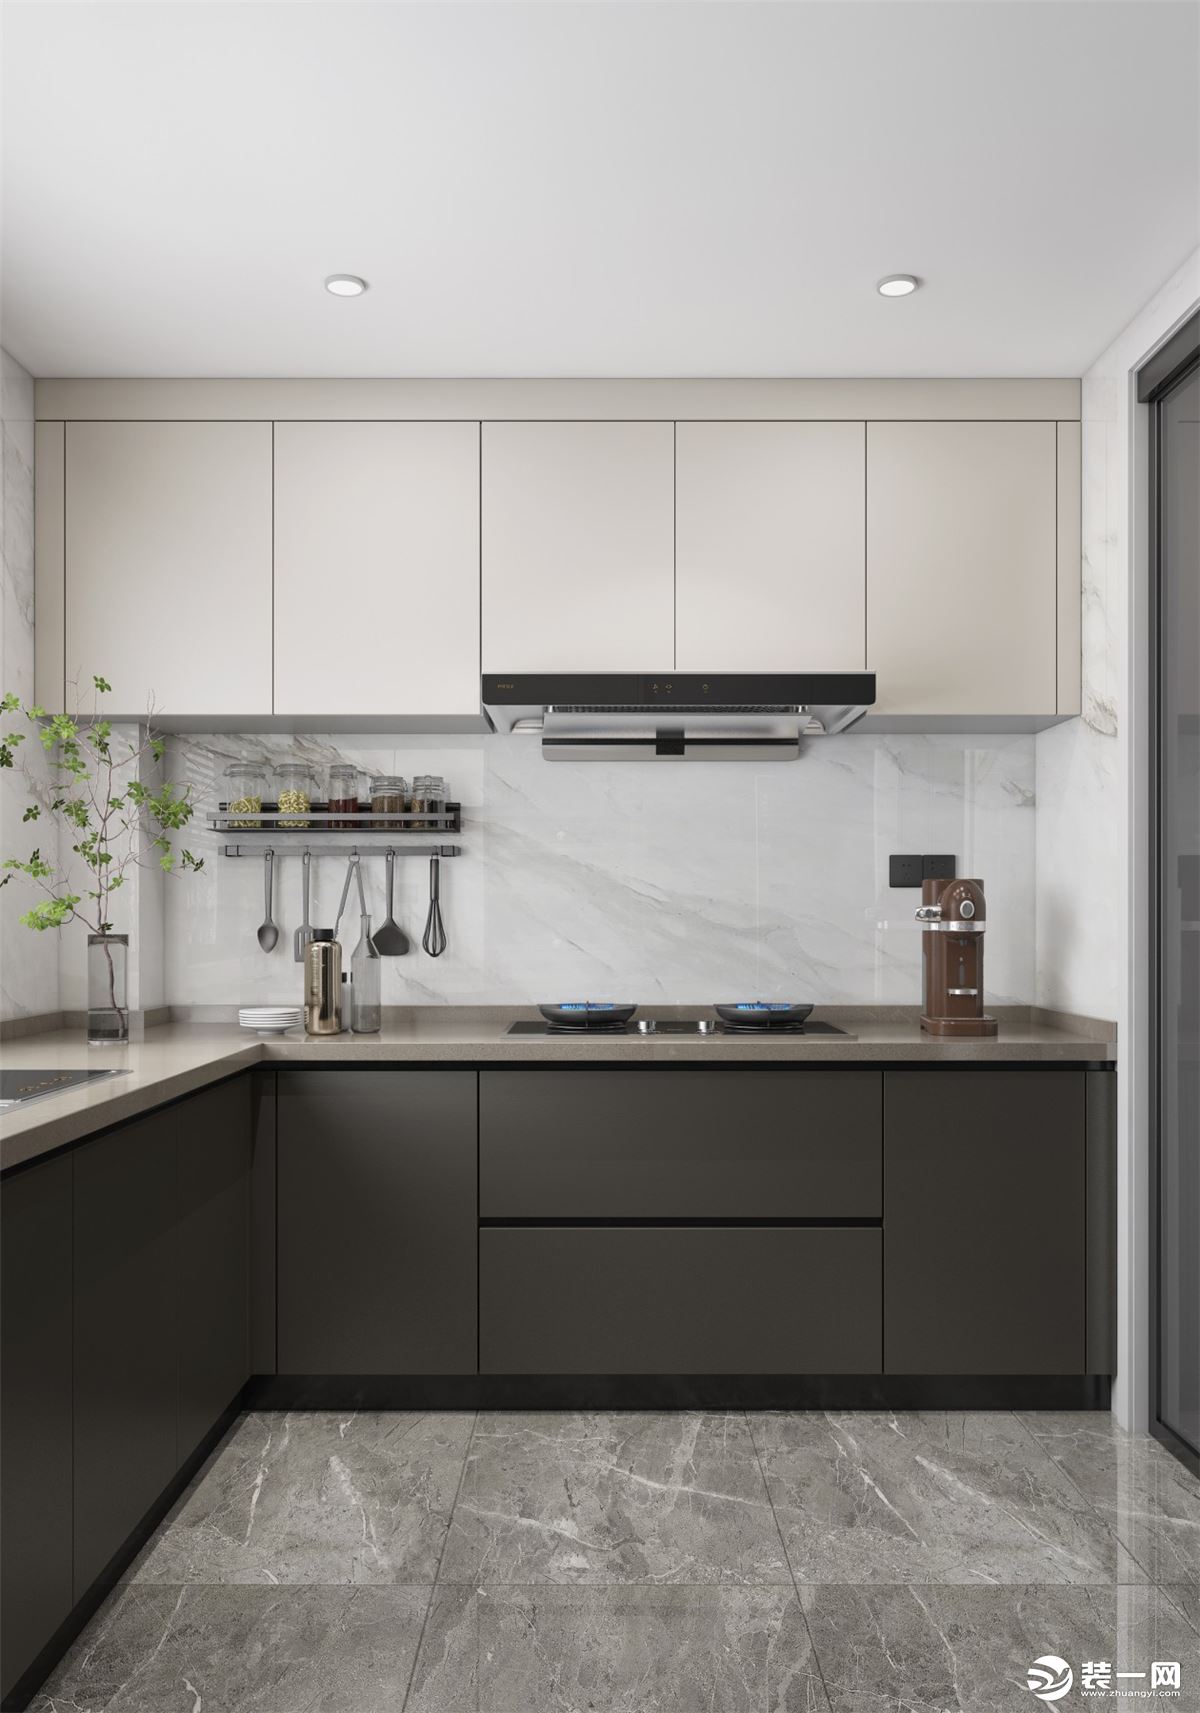 厨柜采用U字型设计，把冰箱放在厨房，使用方便也不占用外面空间，墙地面砖采用亮色釉面砖，增加空间亮度。